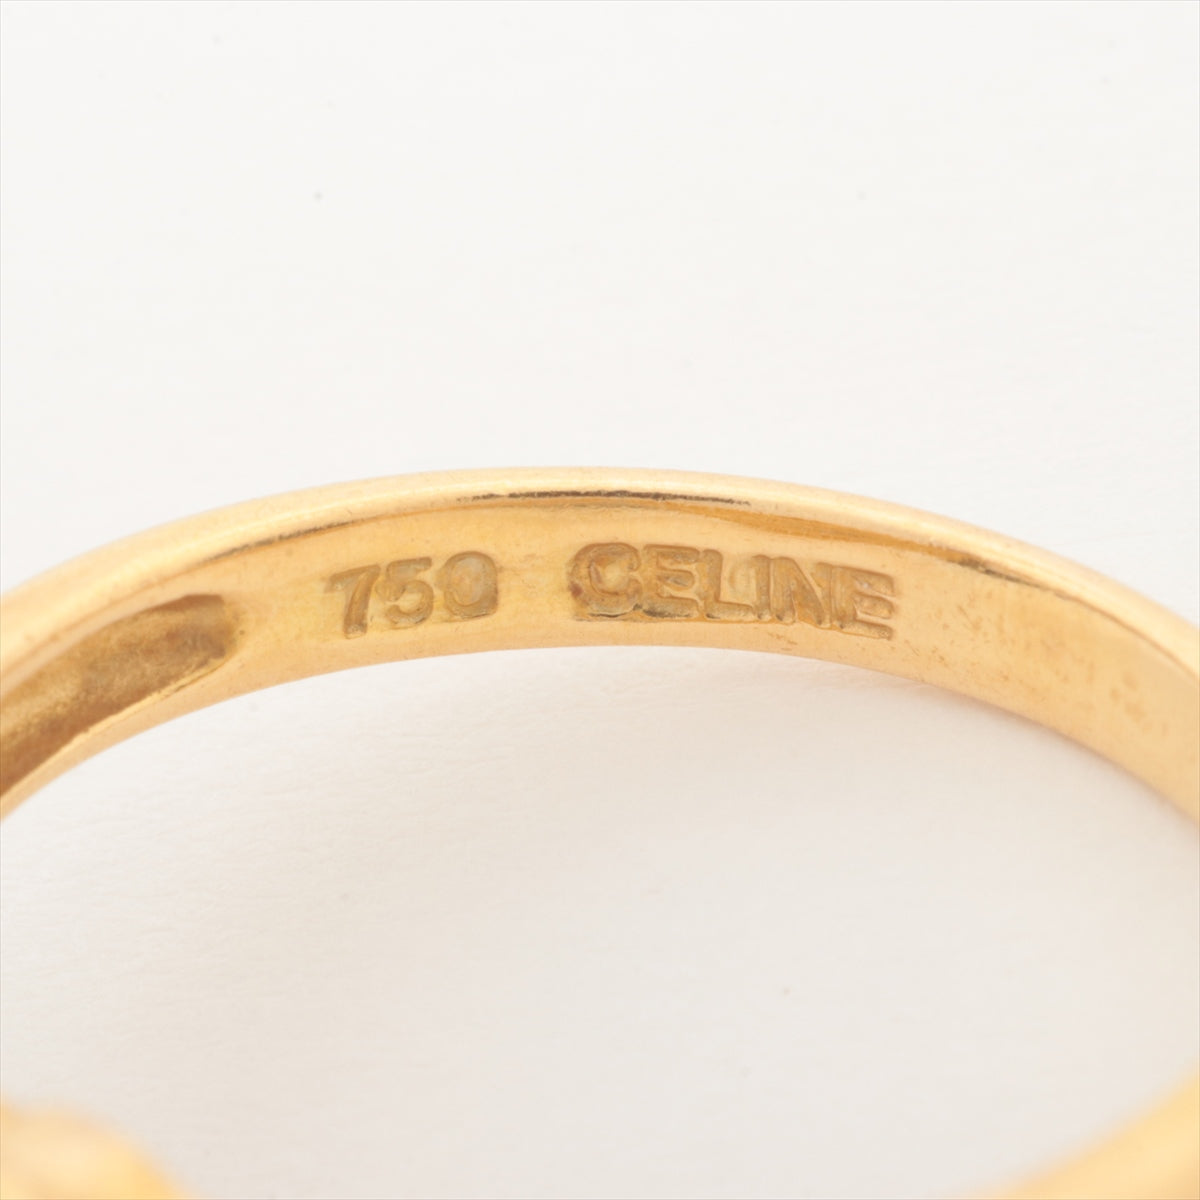 CELINE diamond rings 750(YG) 3.0g 0.03